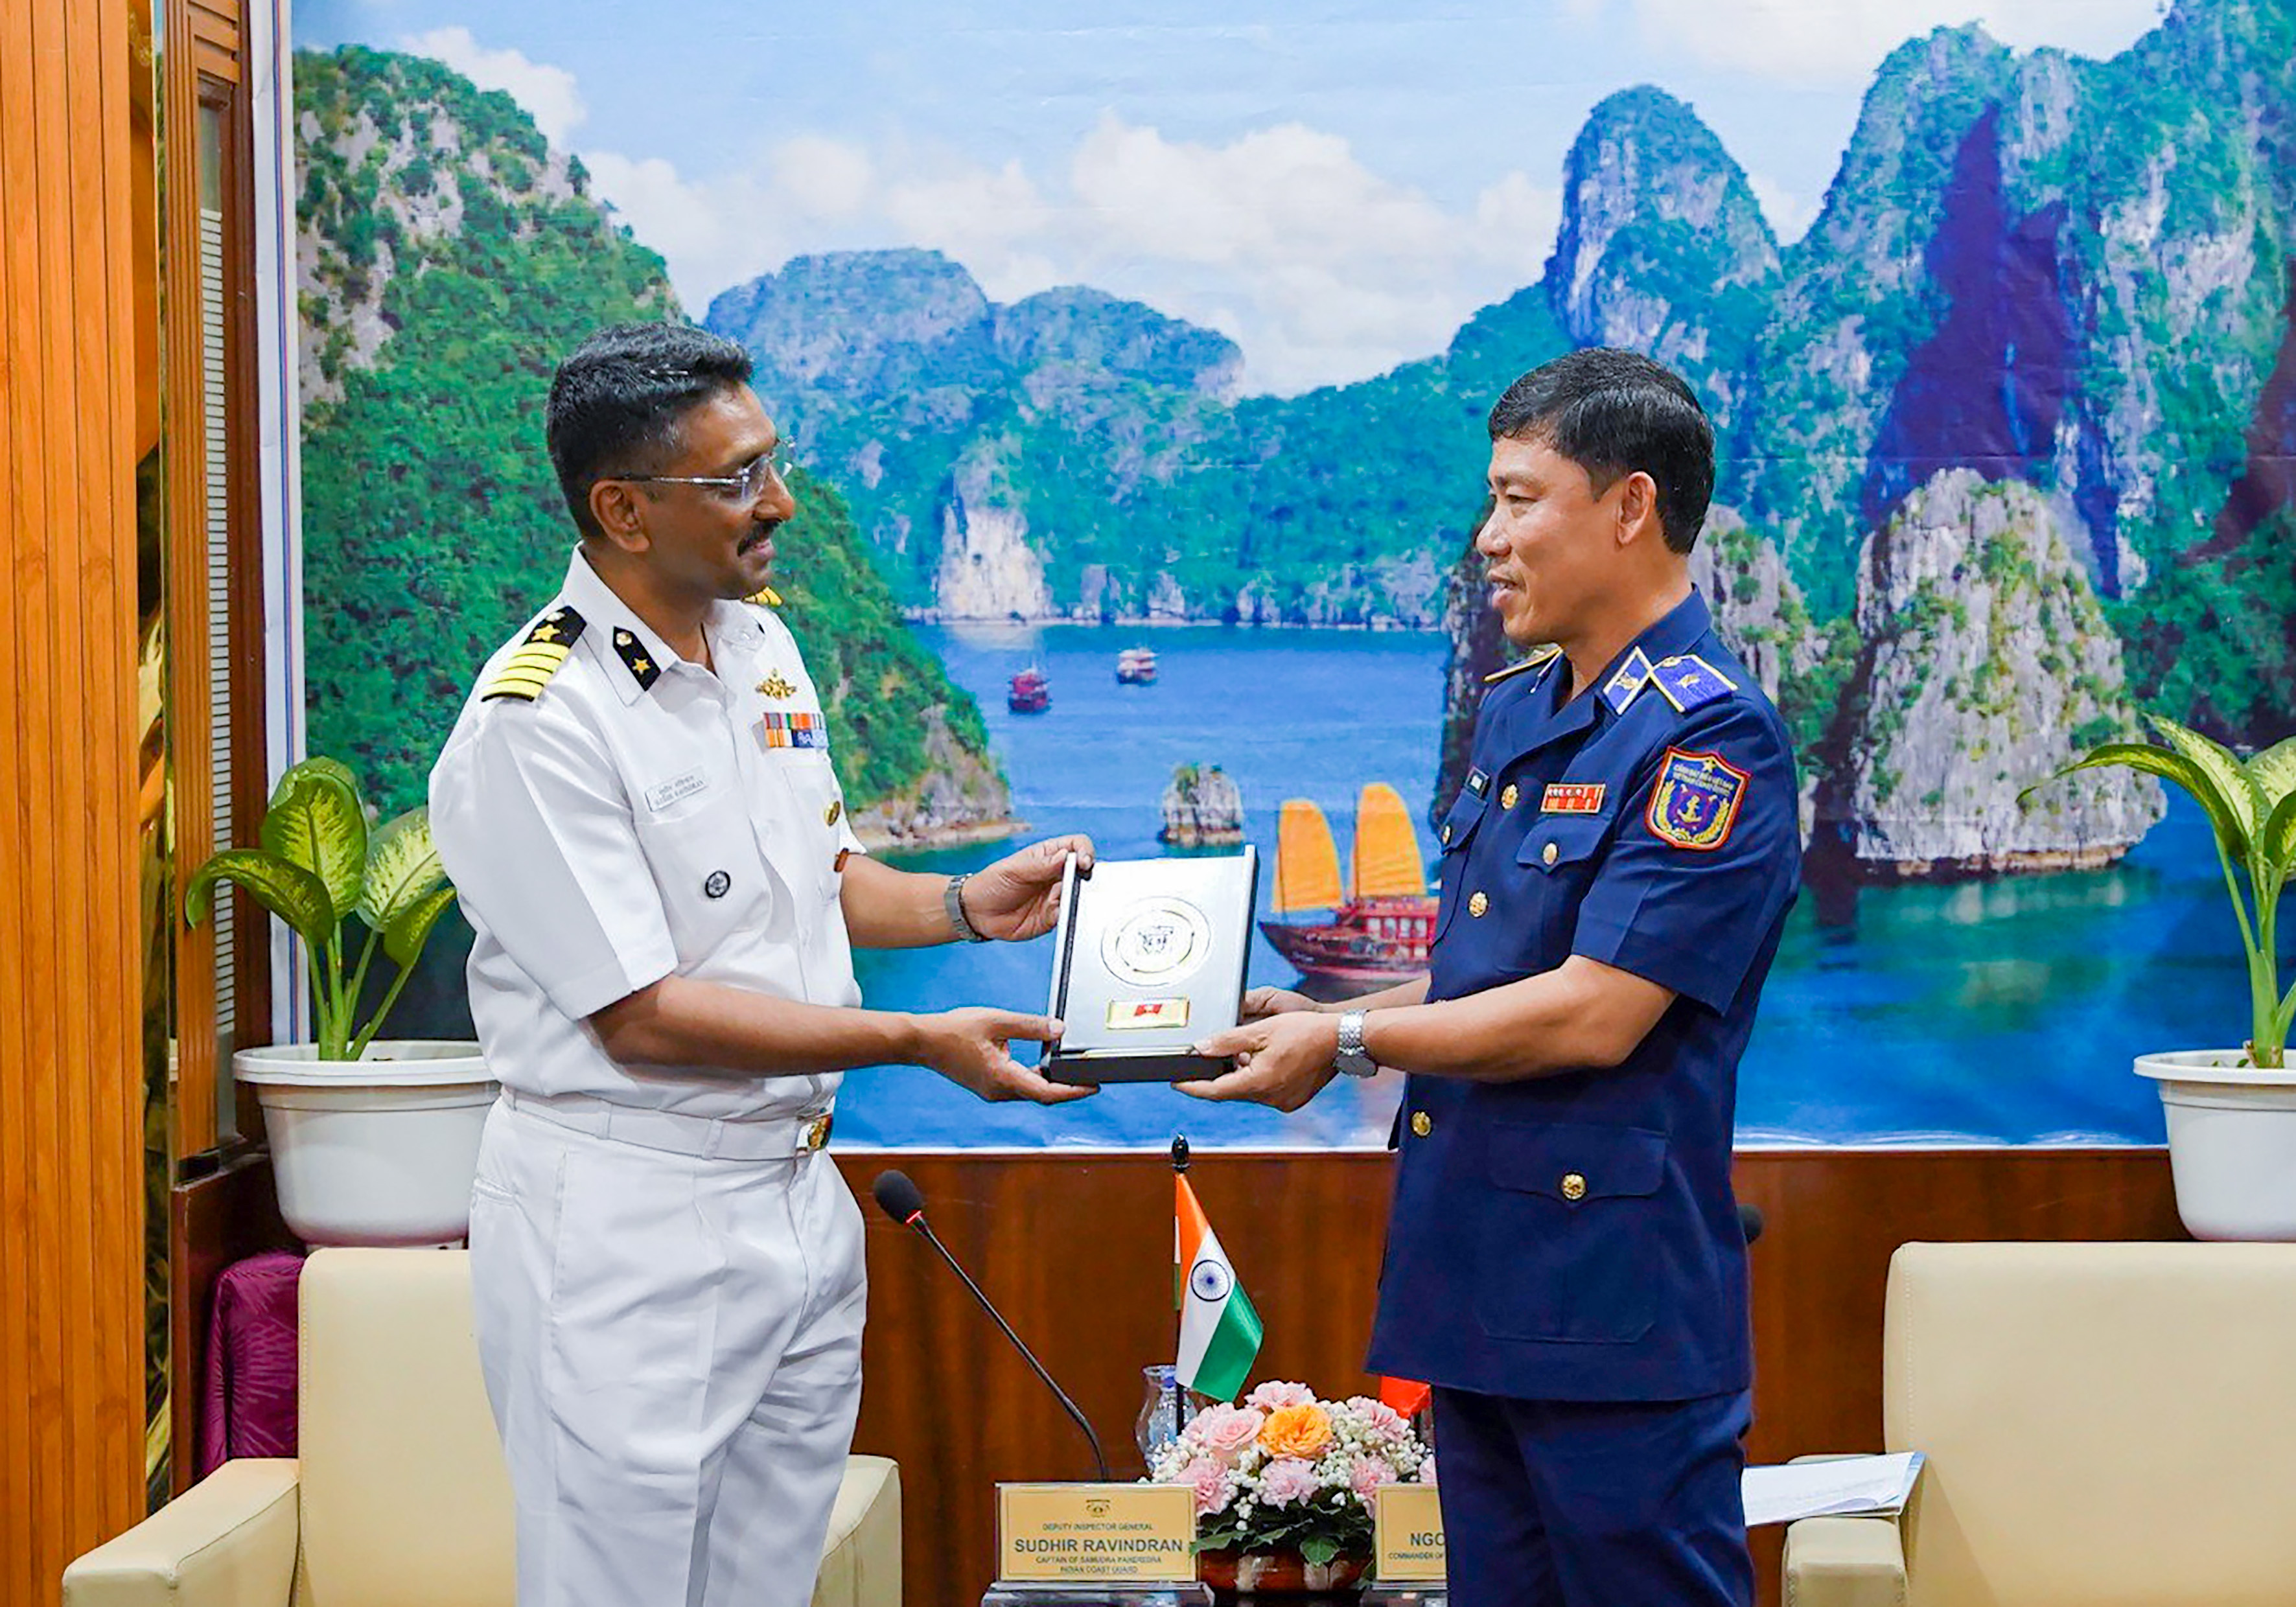 Thiếu tướng Ngô Bình Minh, Tư lệnh Vùng Cảnh sát biển 3 tặng logo của lực lượng Cảnh sát biển cho ông Sudhir Ravindran trưởng đoàn lục lượng Bảo vệ bờ biển Ấn Độ.